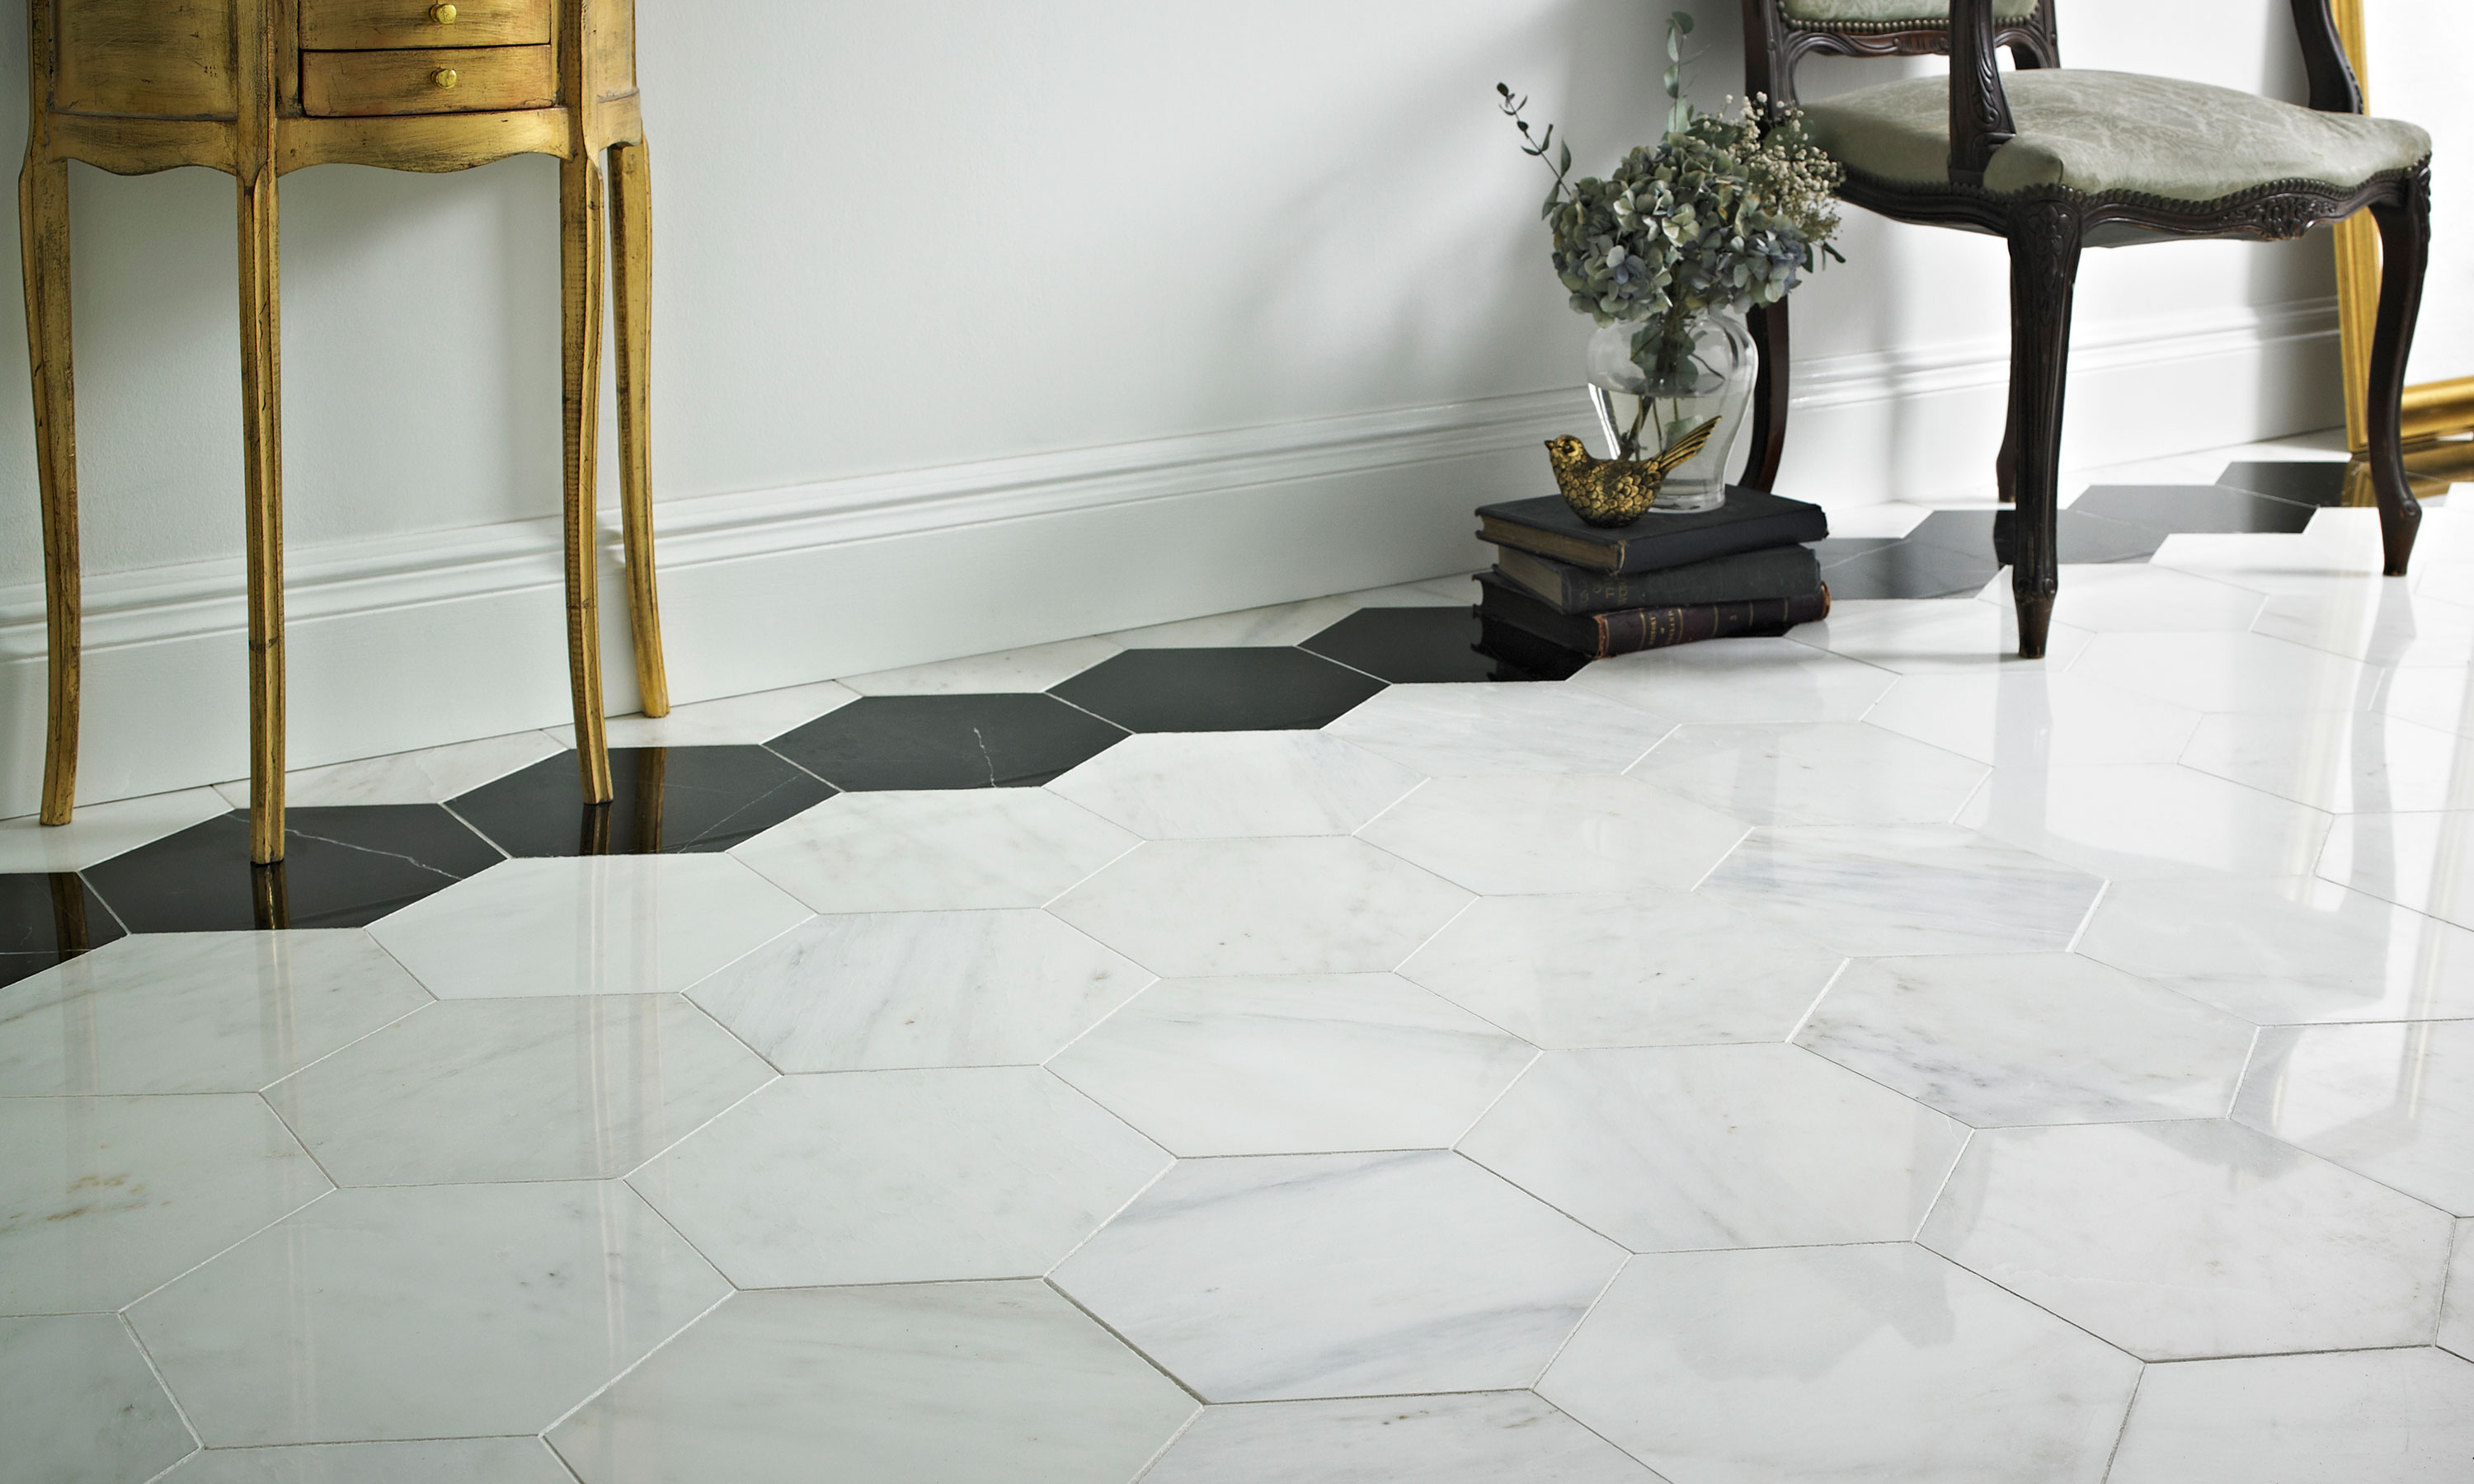 Ceramic kitchen floor tiles